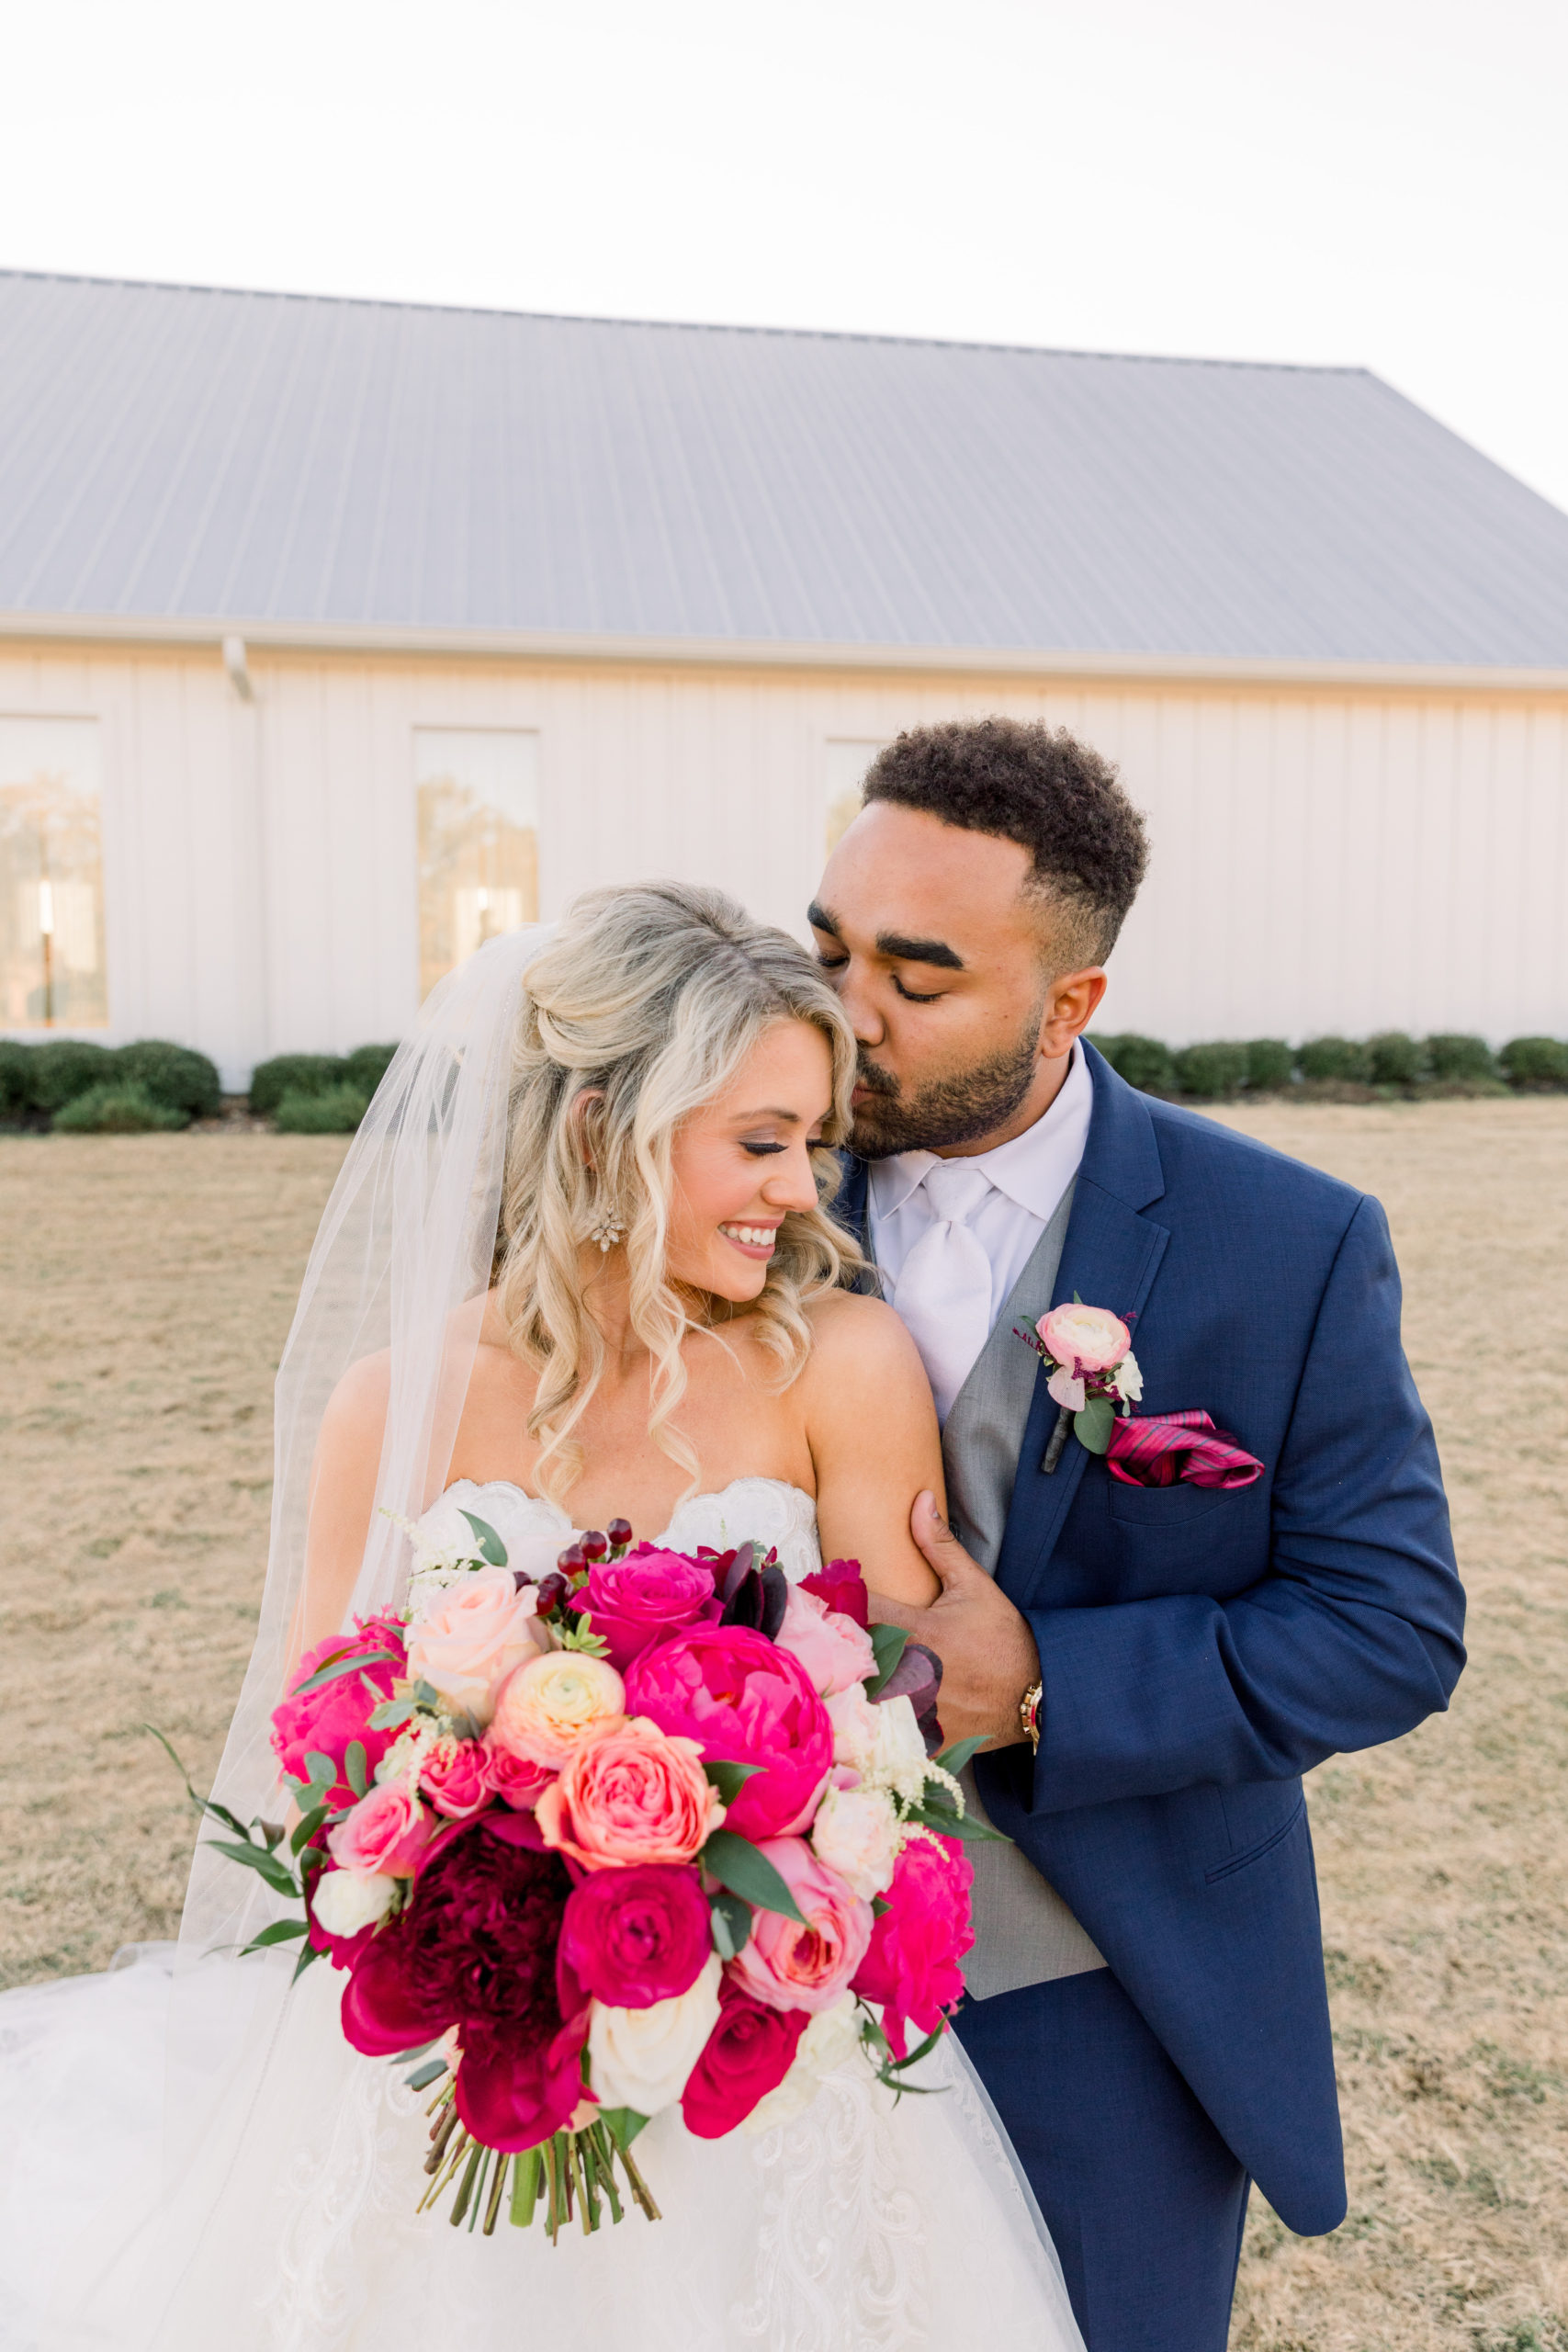 Bryce + Christi | The Farmhouse Houston Wedding